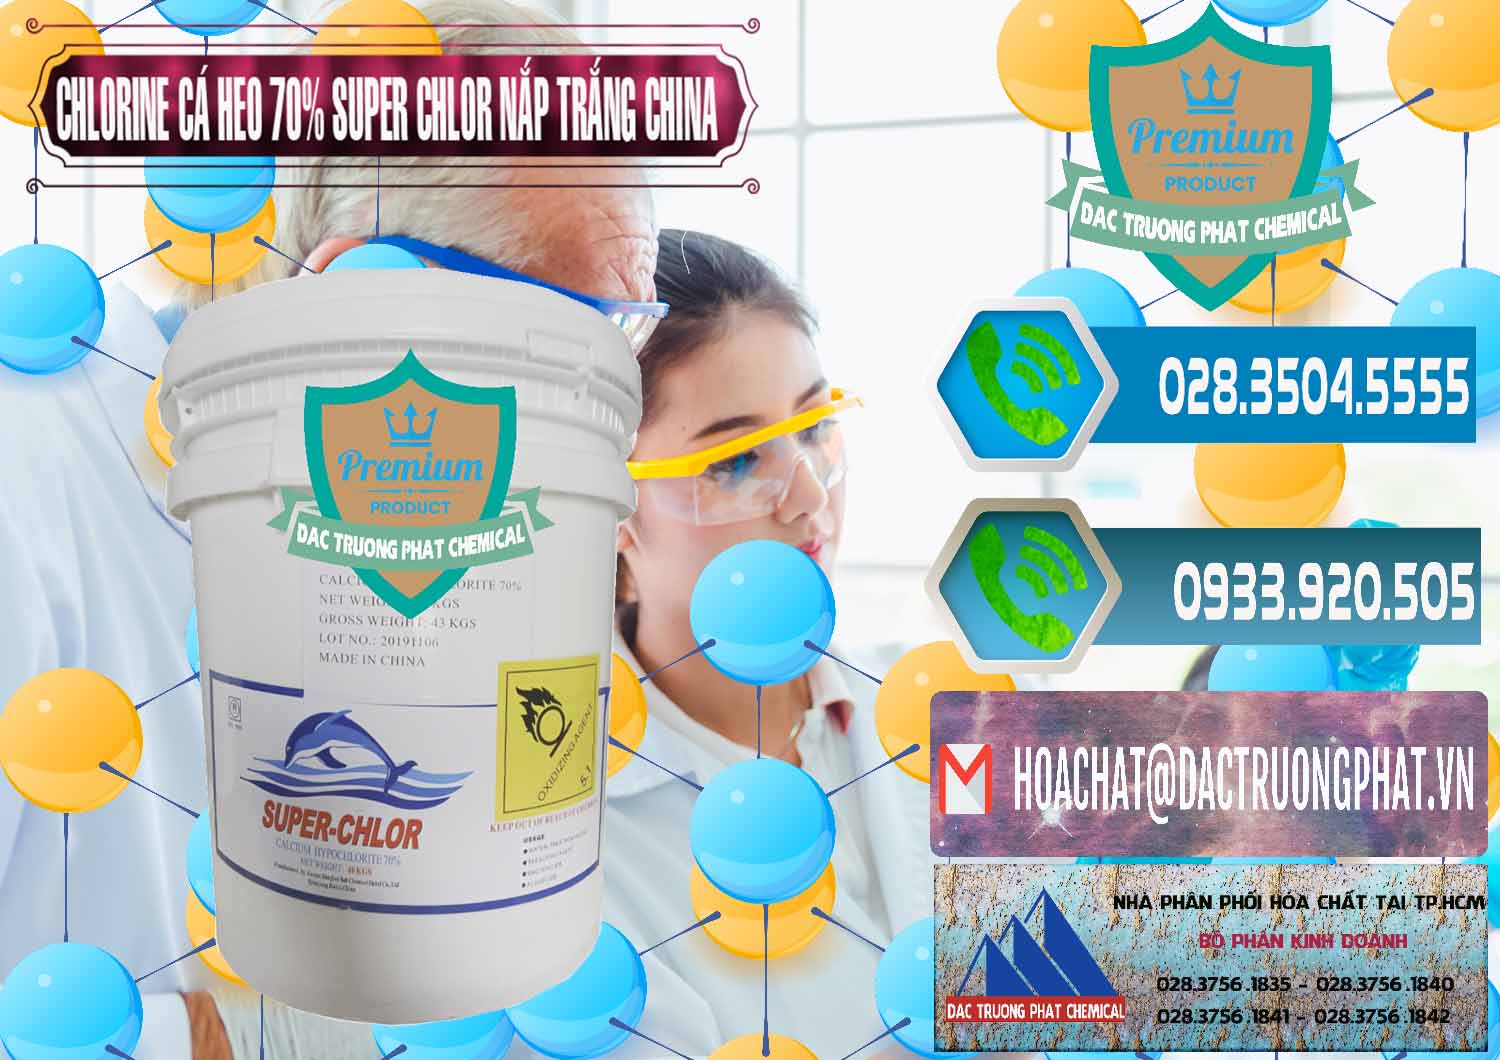 Chuyên phân phối - bán Clorin - Chlorine Cá Heo 70% Super Chlor Nắp Trắng Trung Quốc China - 0240 - Chuyên cung ứng & phân phối hóa chất tại TP.HCM - congtyhoachat.net